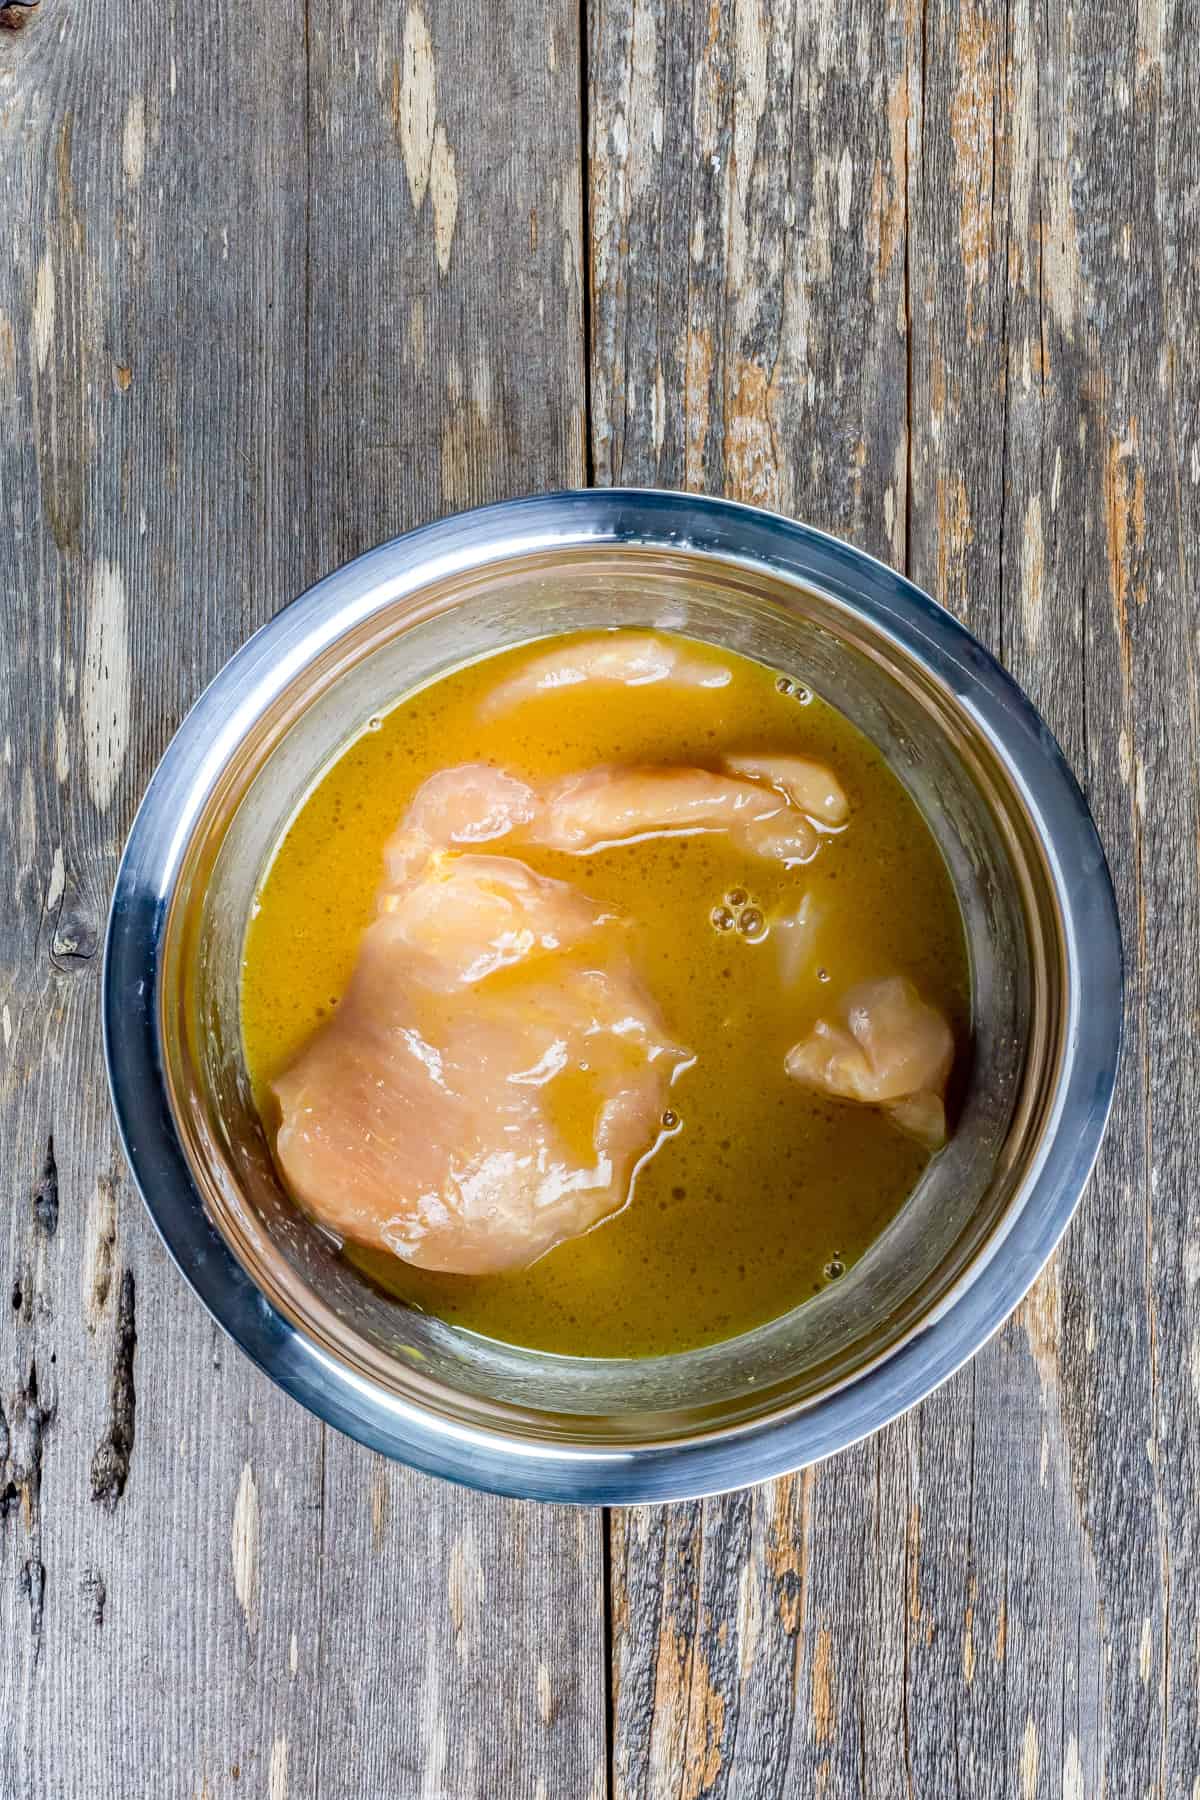 Chicken marinating in honey mustard sauce.